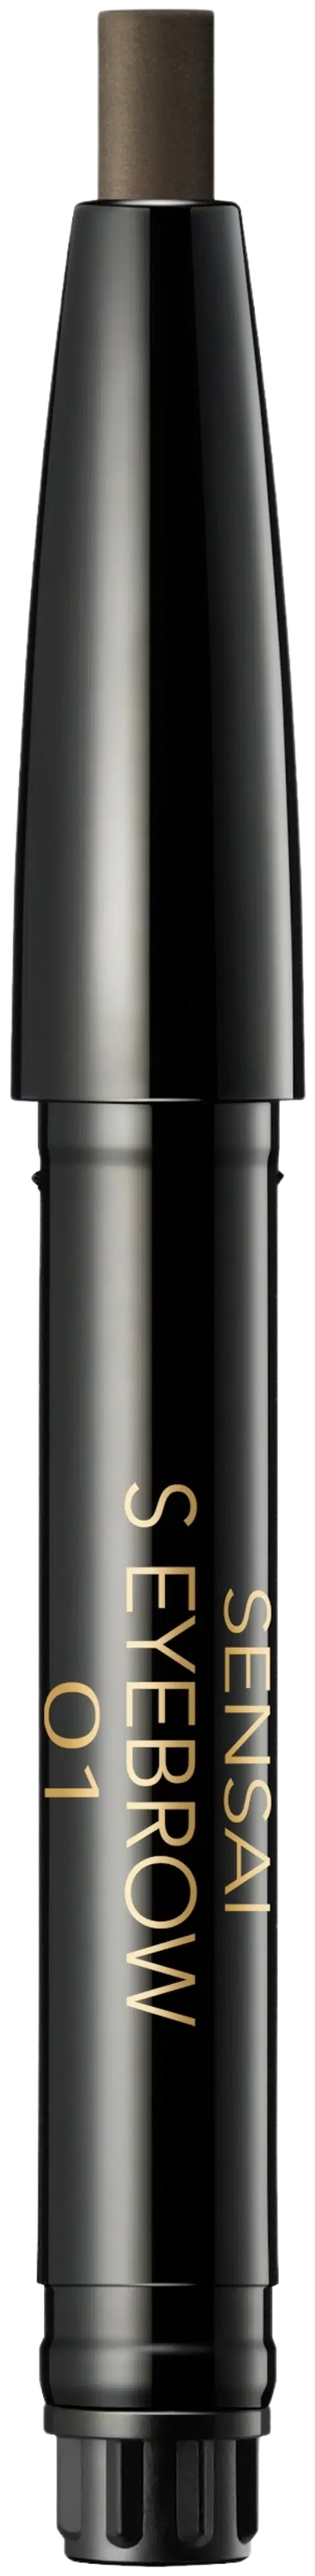 Sensai Styling Eyebrow Pencil Refill kulmakynä täyttöpakkaus 0,2 g